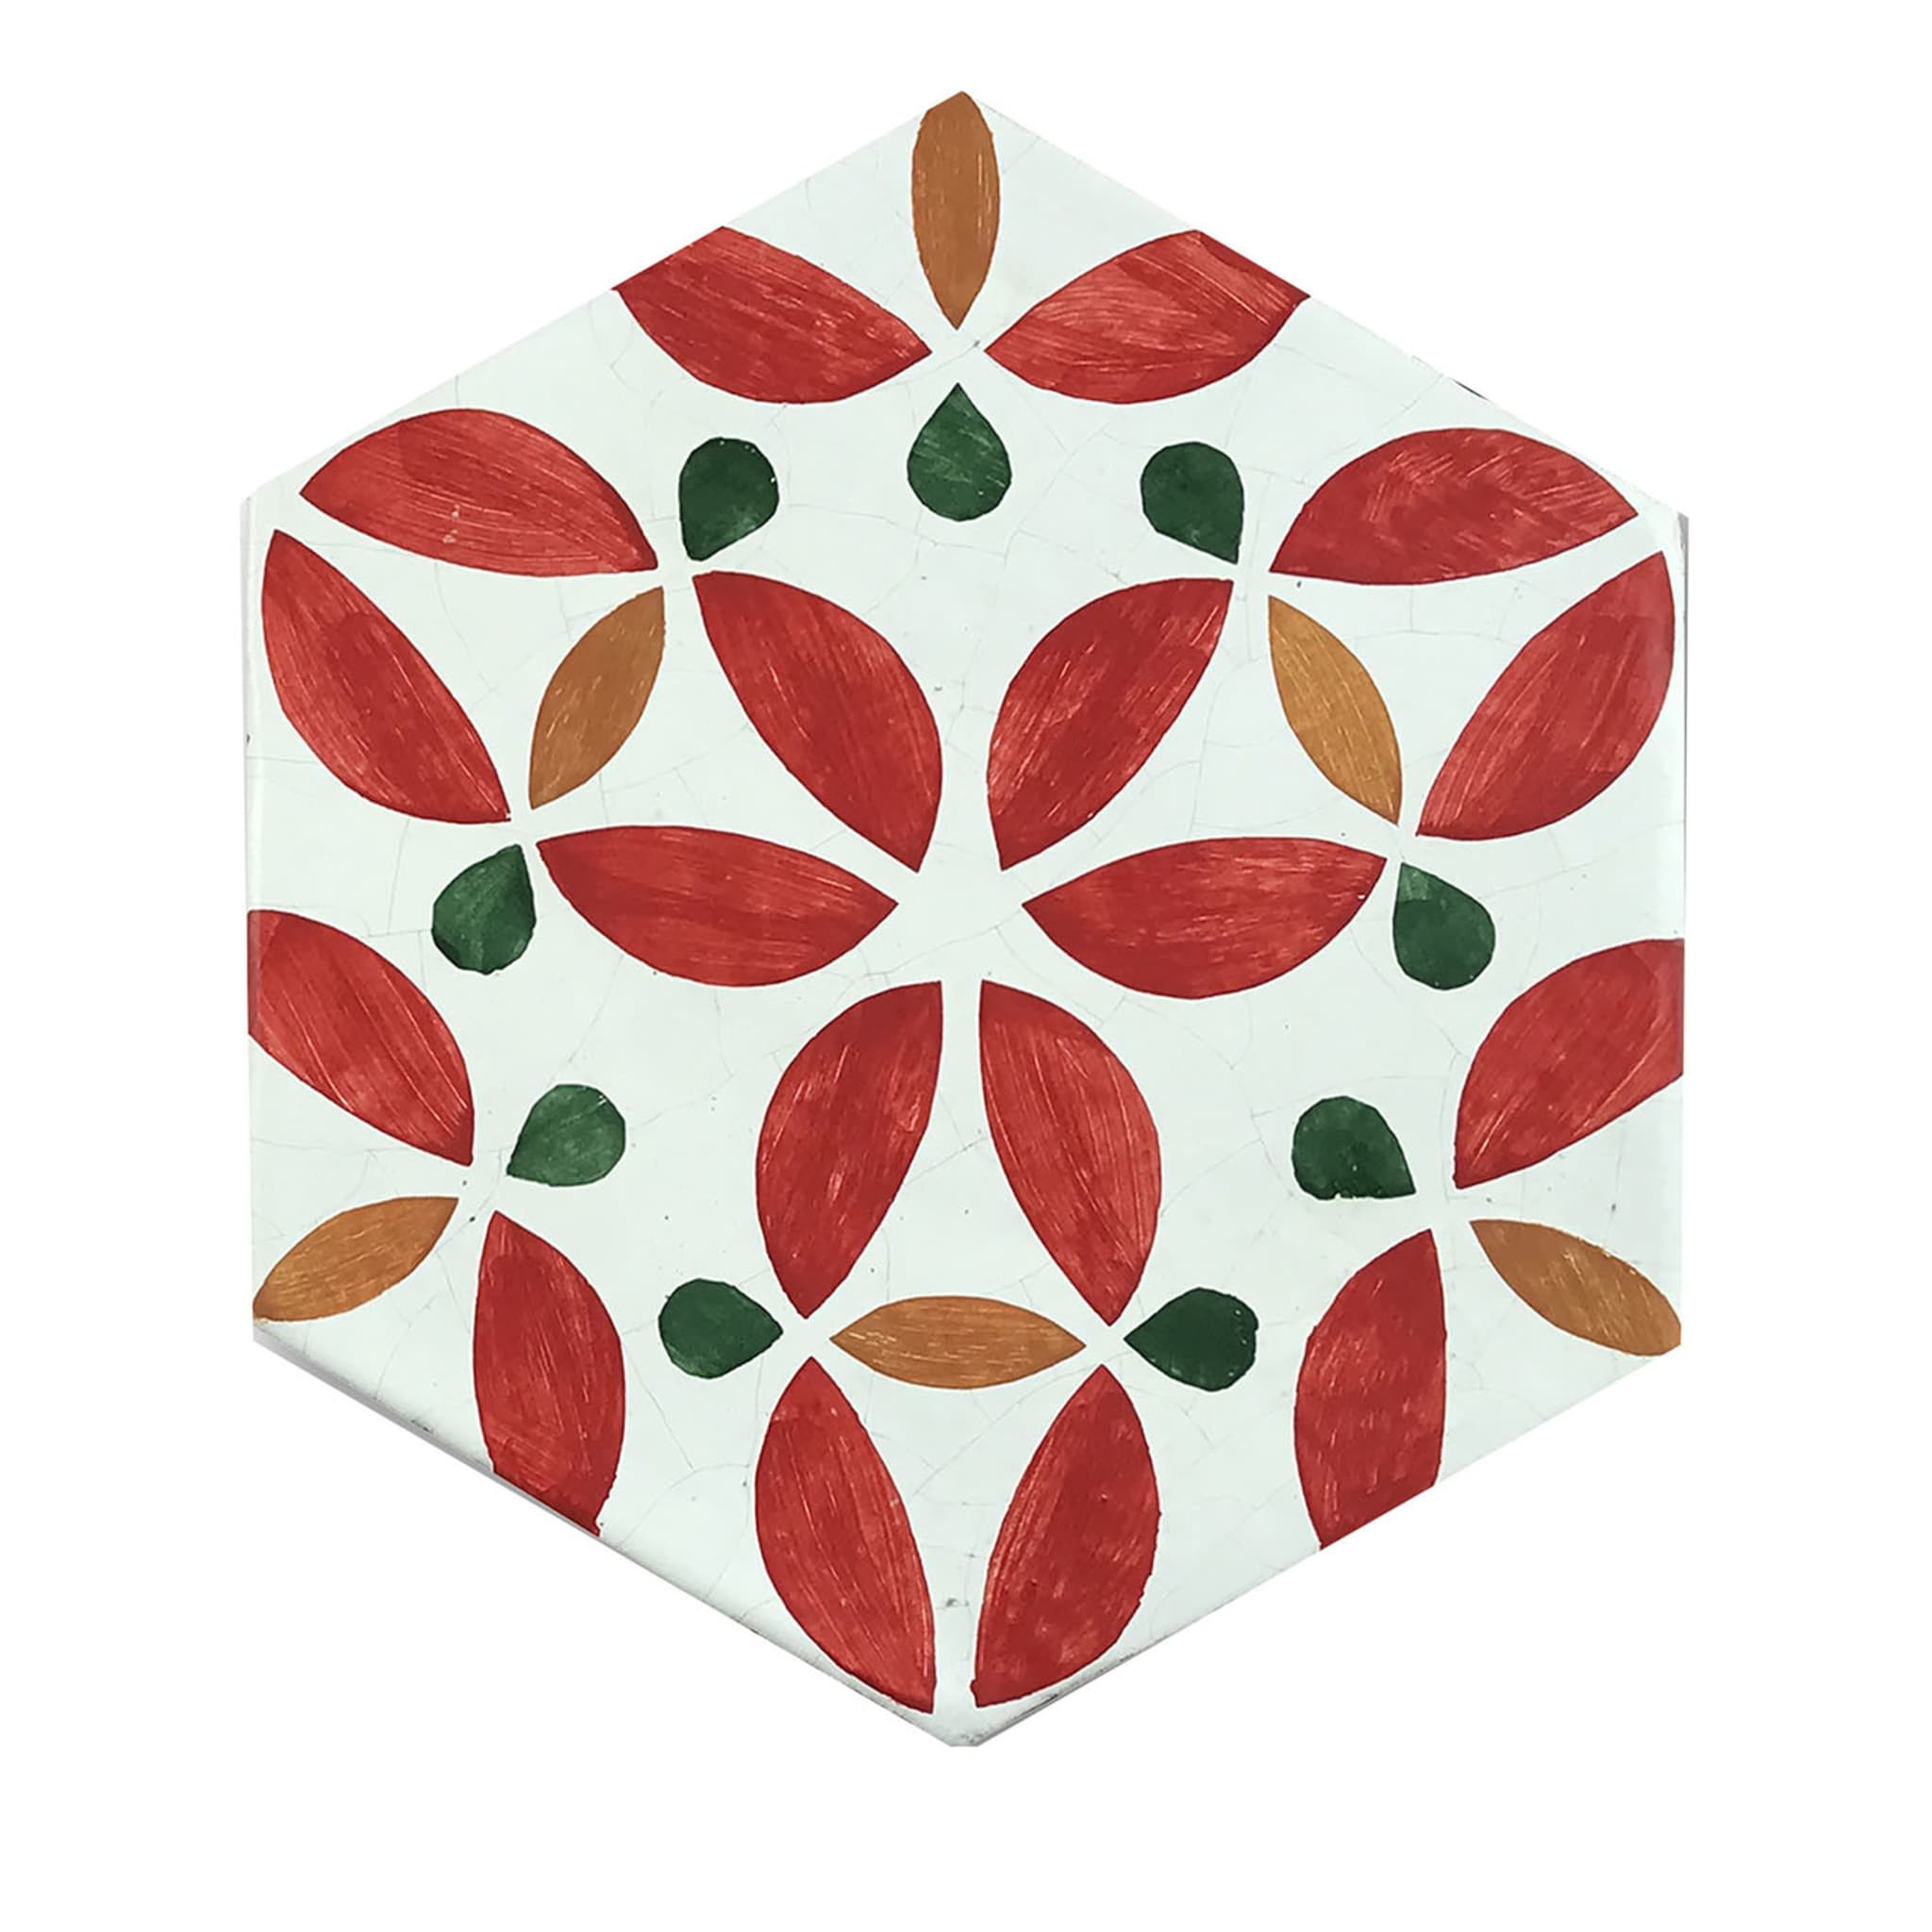 Daamè - Ensemble de 28 carreaux hexagonaux rouges - Vue principale